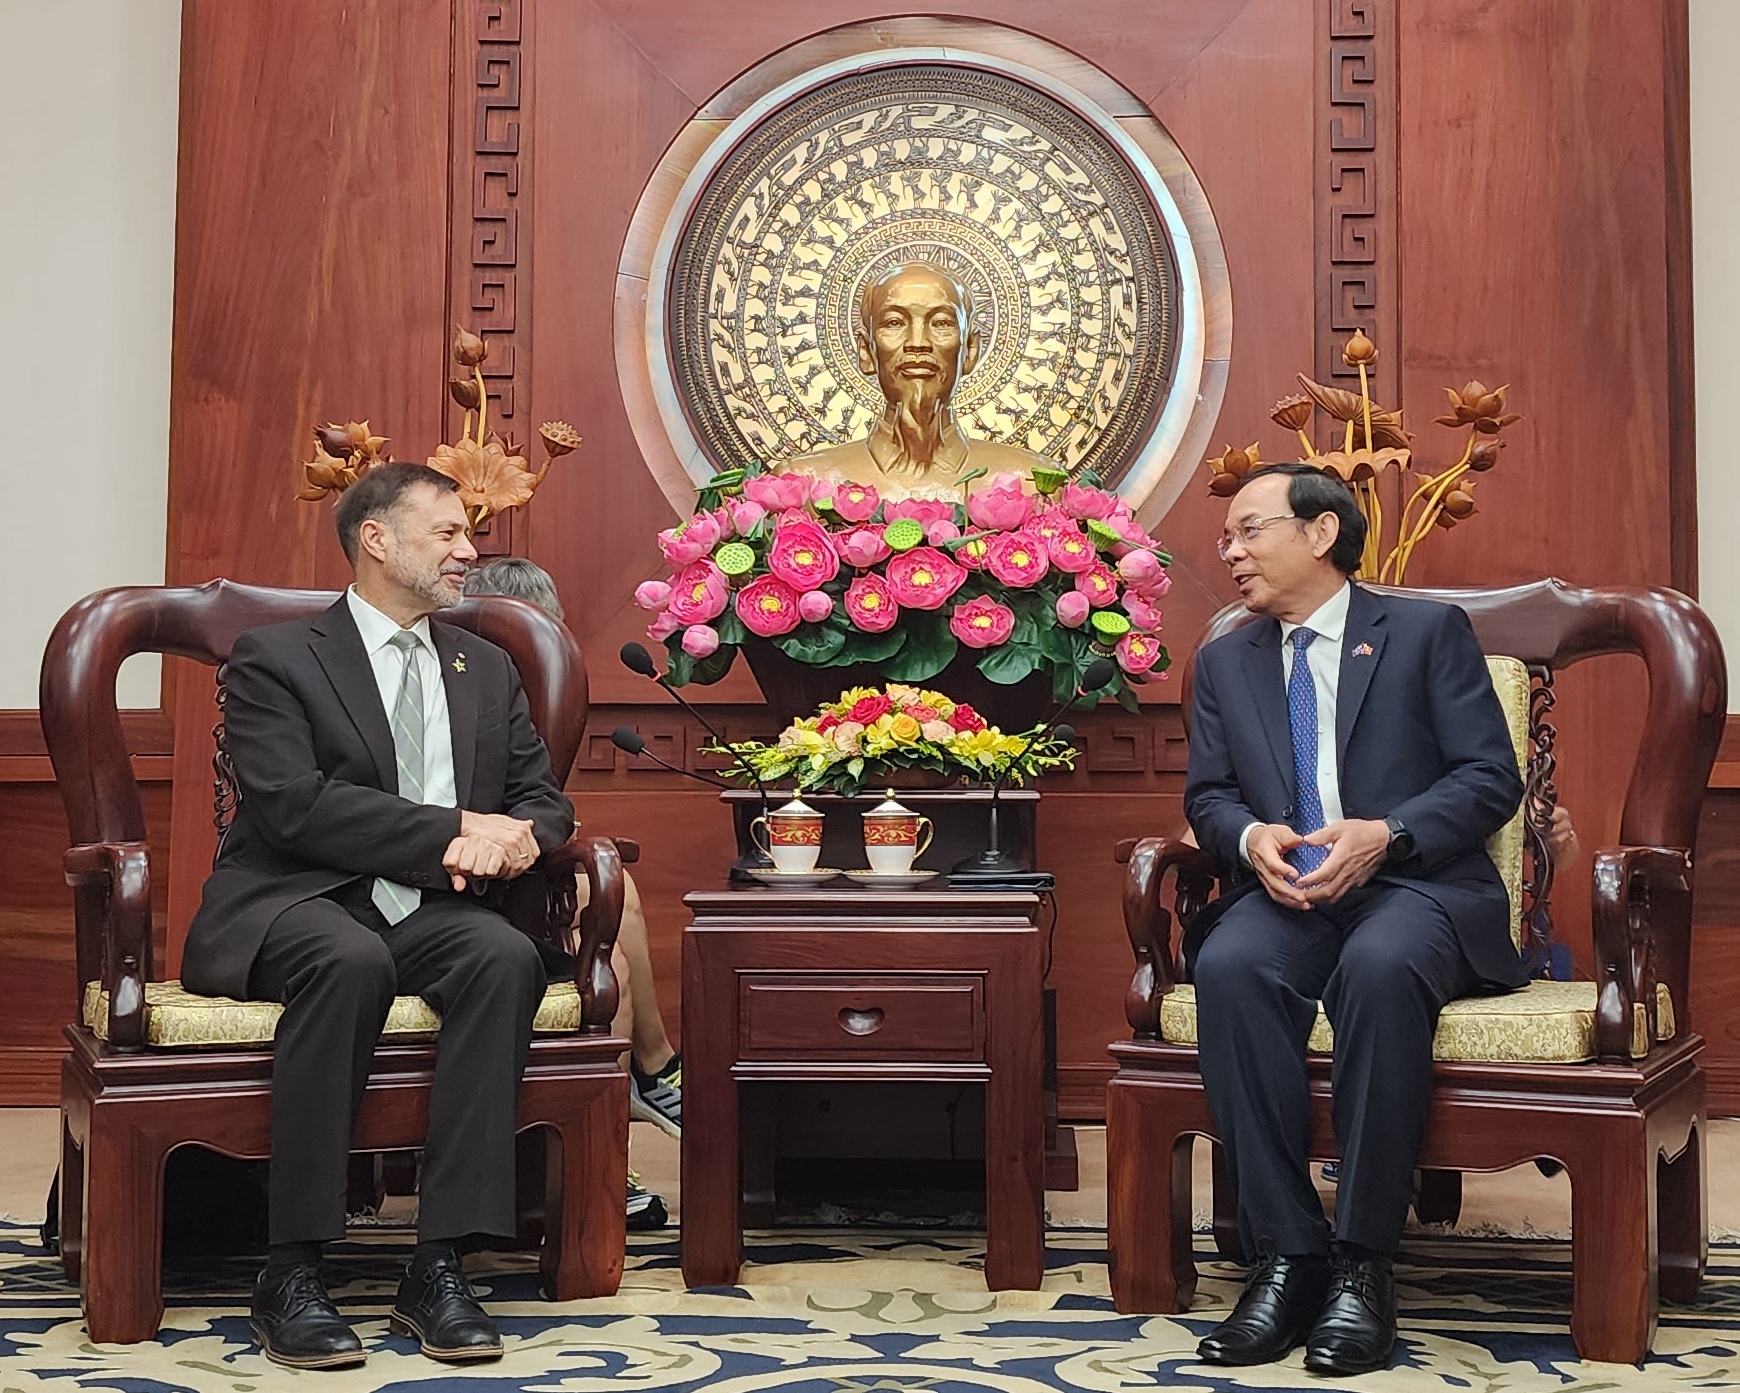 Ủy viên Bộ Chính trị, Bí thư Thành ùy Nguyễn Văn Nên trò chuyện cùng ngài Andrew Goledzinowski, Đại sứ Úc tại Việt Nam 